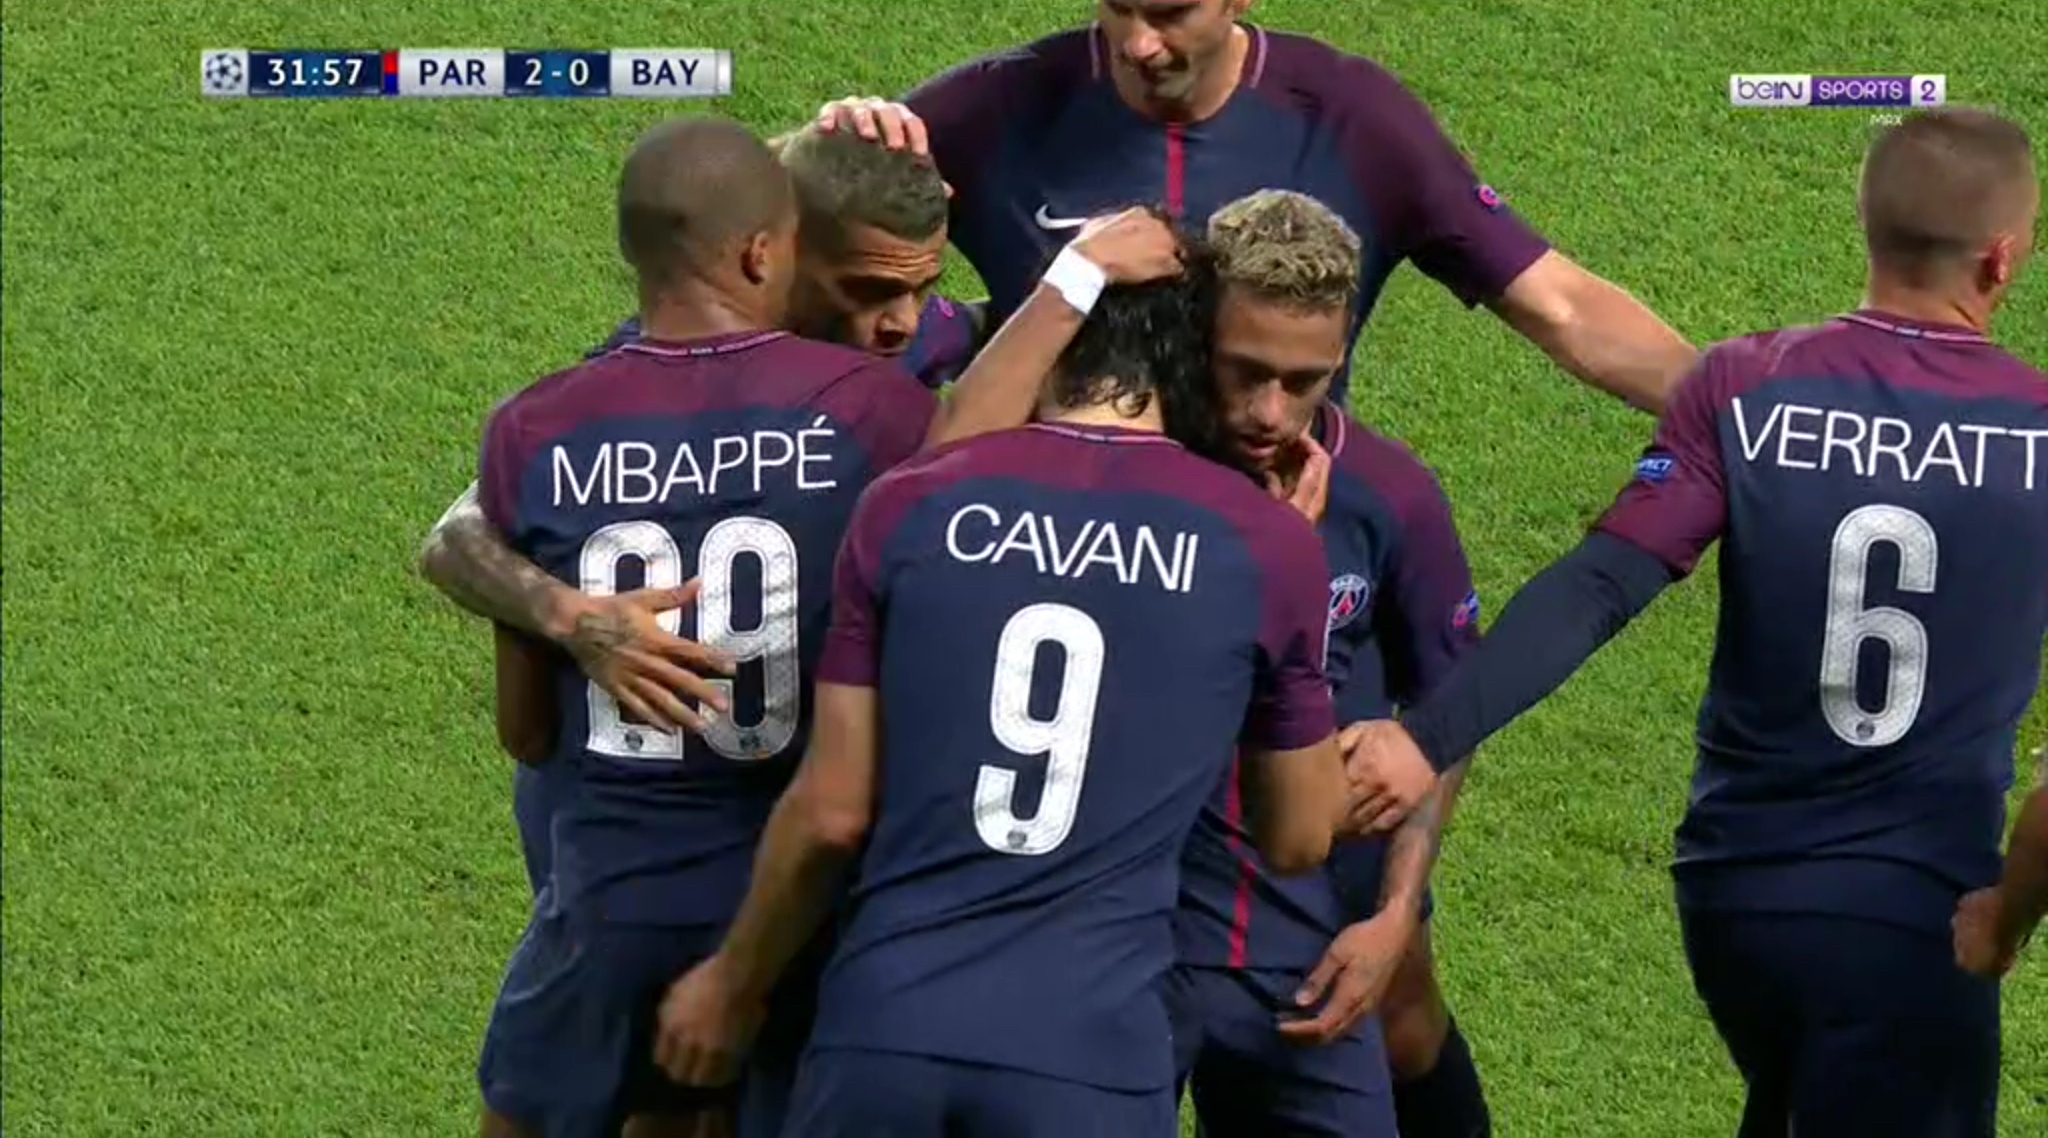 Imagen muy llamativa la de la celebración del 2-0. Cavani se fue a la banda, los jugadores fueron a felicitarle y Neymar se abrazó con Alves. El lateral le dijo algo y el delantero, aunque algo perezoso, fue a festejarlo con el uruguayo. Siguen los líos...